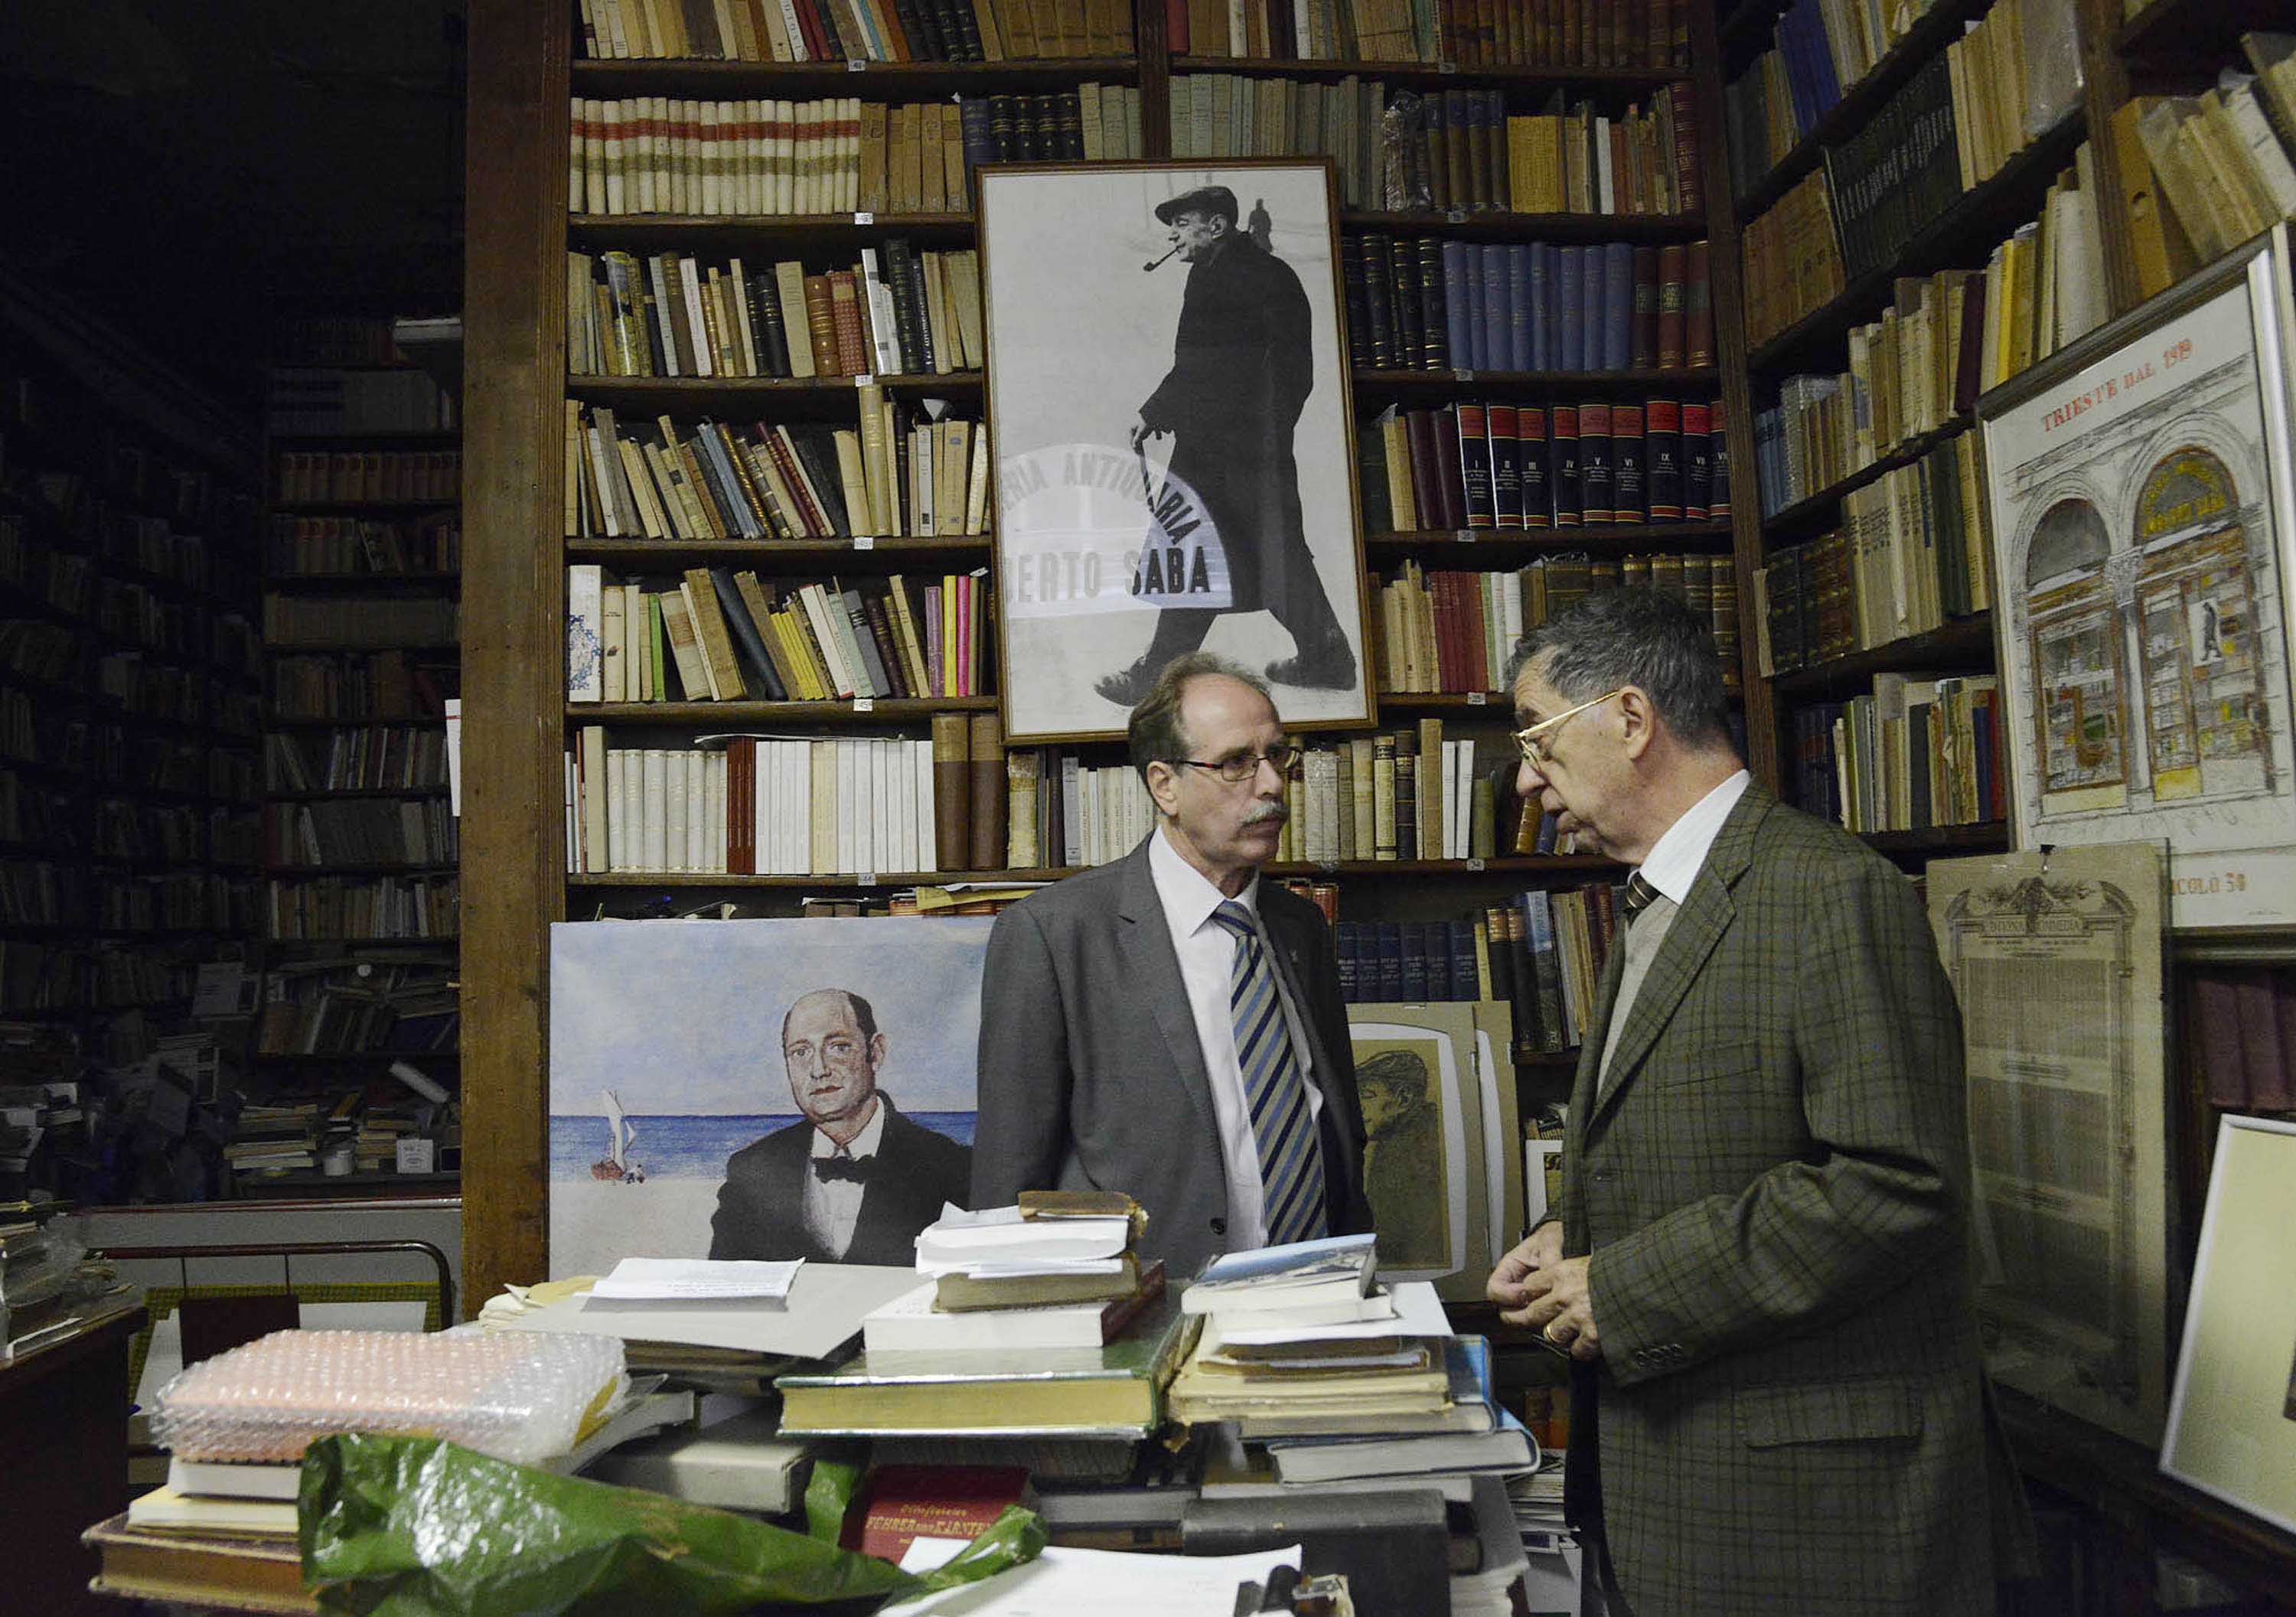 Gianni Torrenti (Assessore regionale Cultura) e Mario Cerne (Titolare Libreria antiquaria Umberto Saba) all'interno della Libreria antiquaria Umberto Saba. (Trieste 21/10/13)